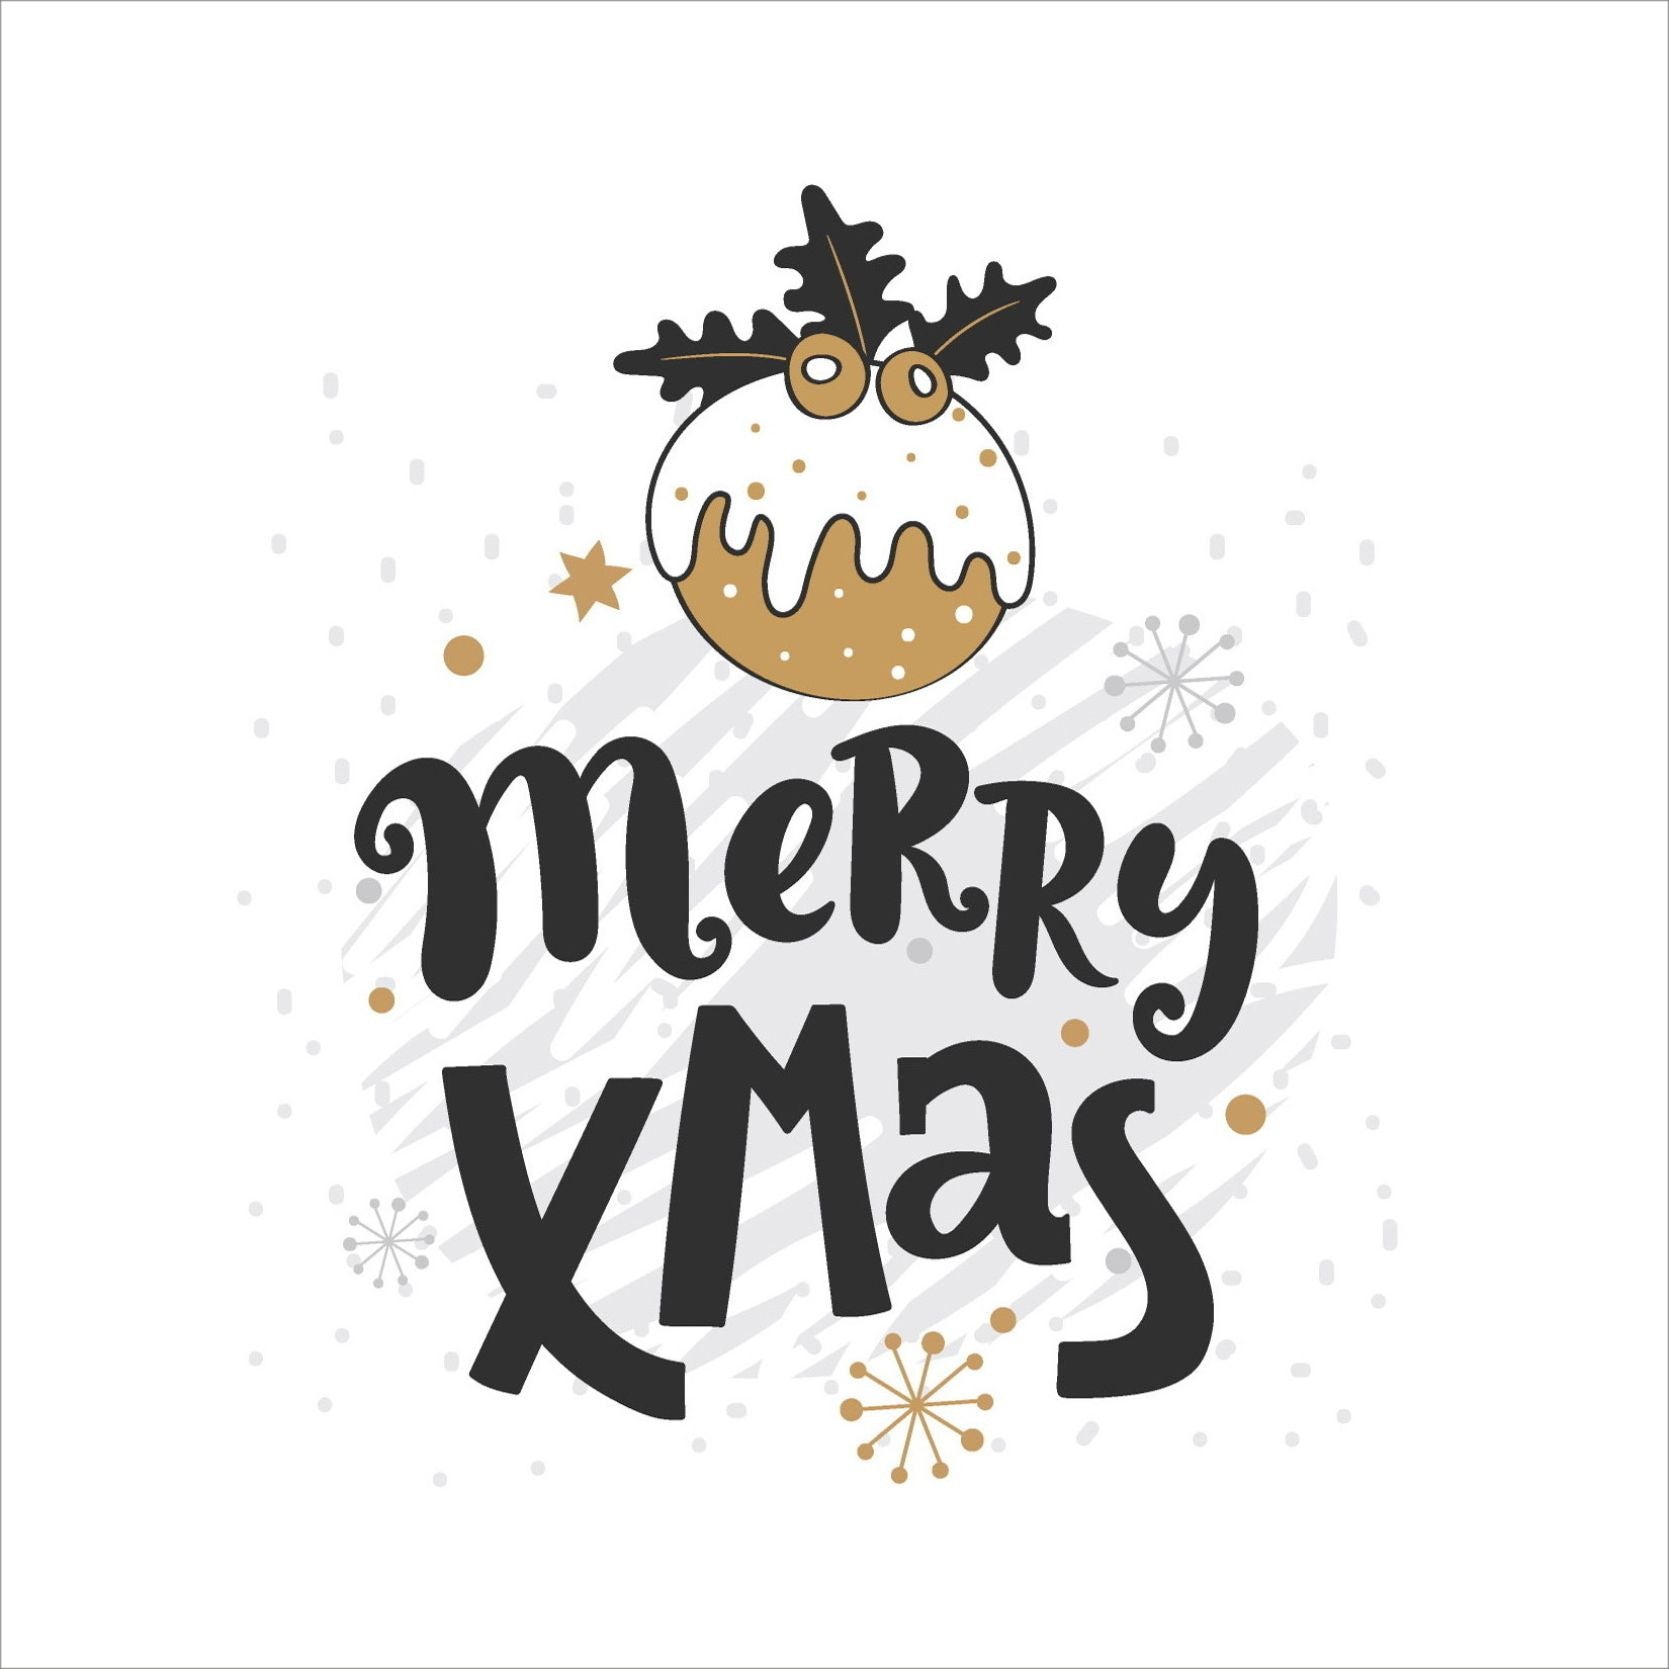 Søte julekort i håndtegnet cartoon. 10 pk. Fargemyanser i grå, sort, hvit og gull. Motiv av julekule. Tekst på kort "merry christmas"